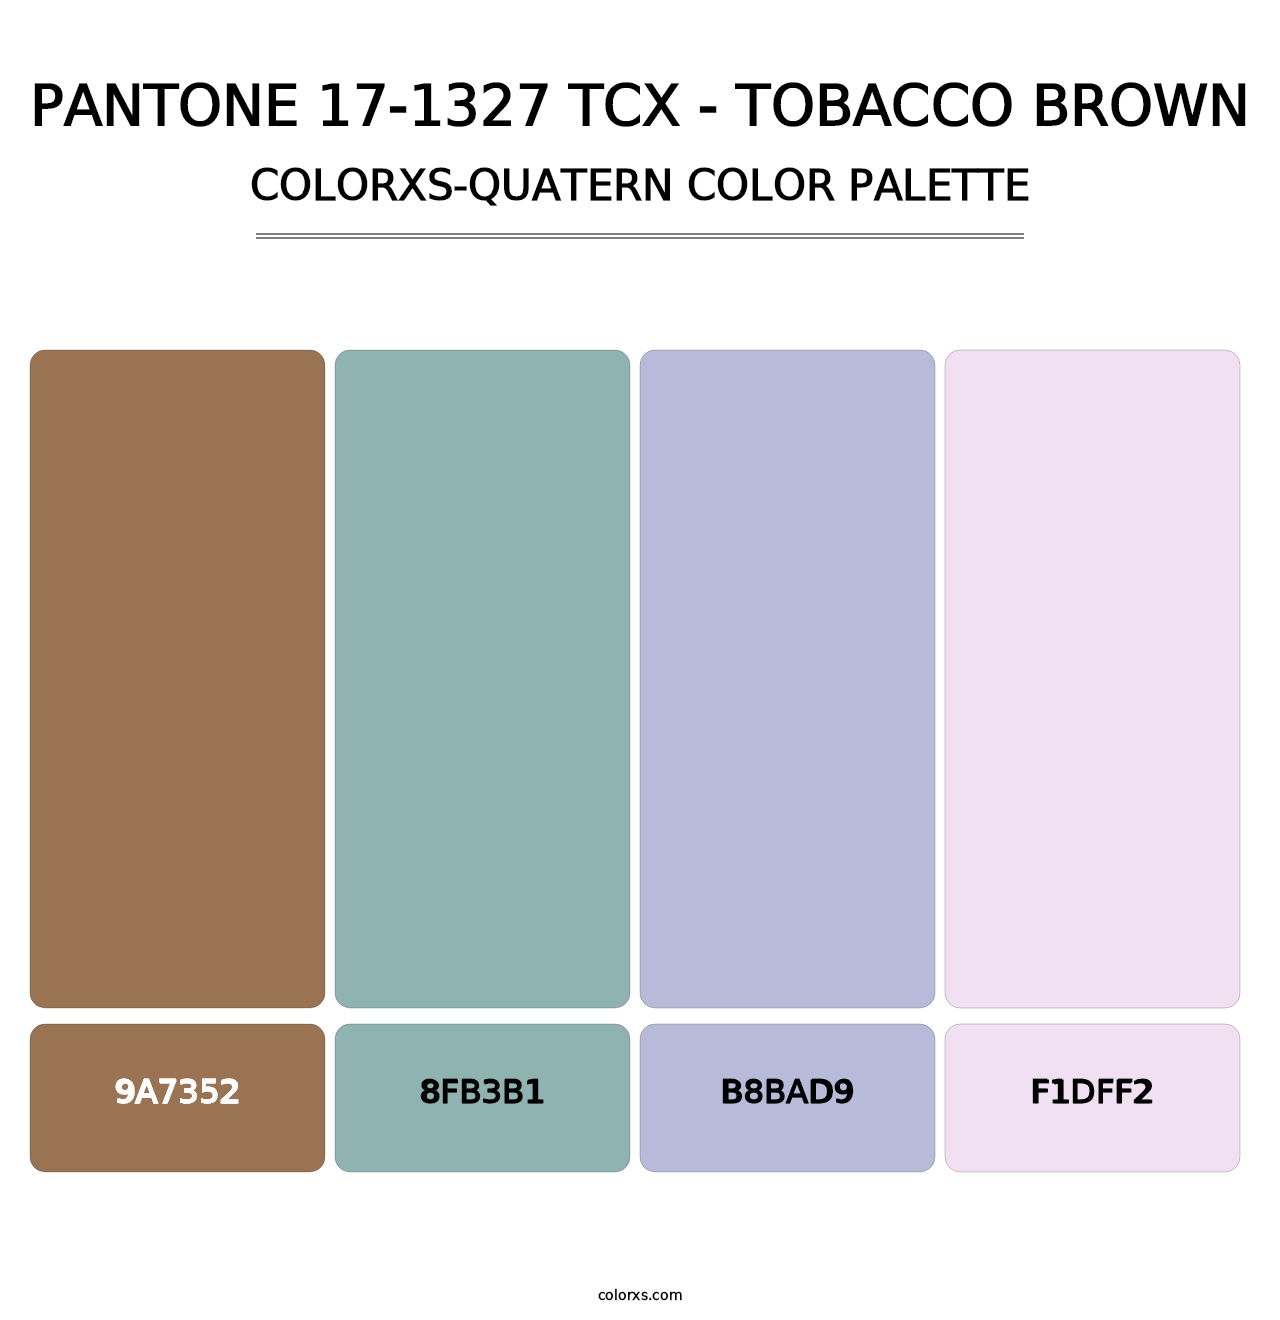 PANTONE 17-1327 TCX - Tobacco Brown - Colorxs Quatern Palette